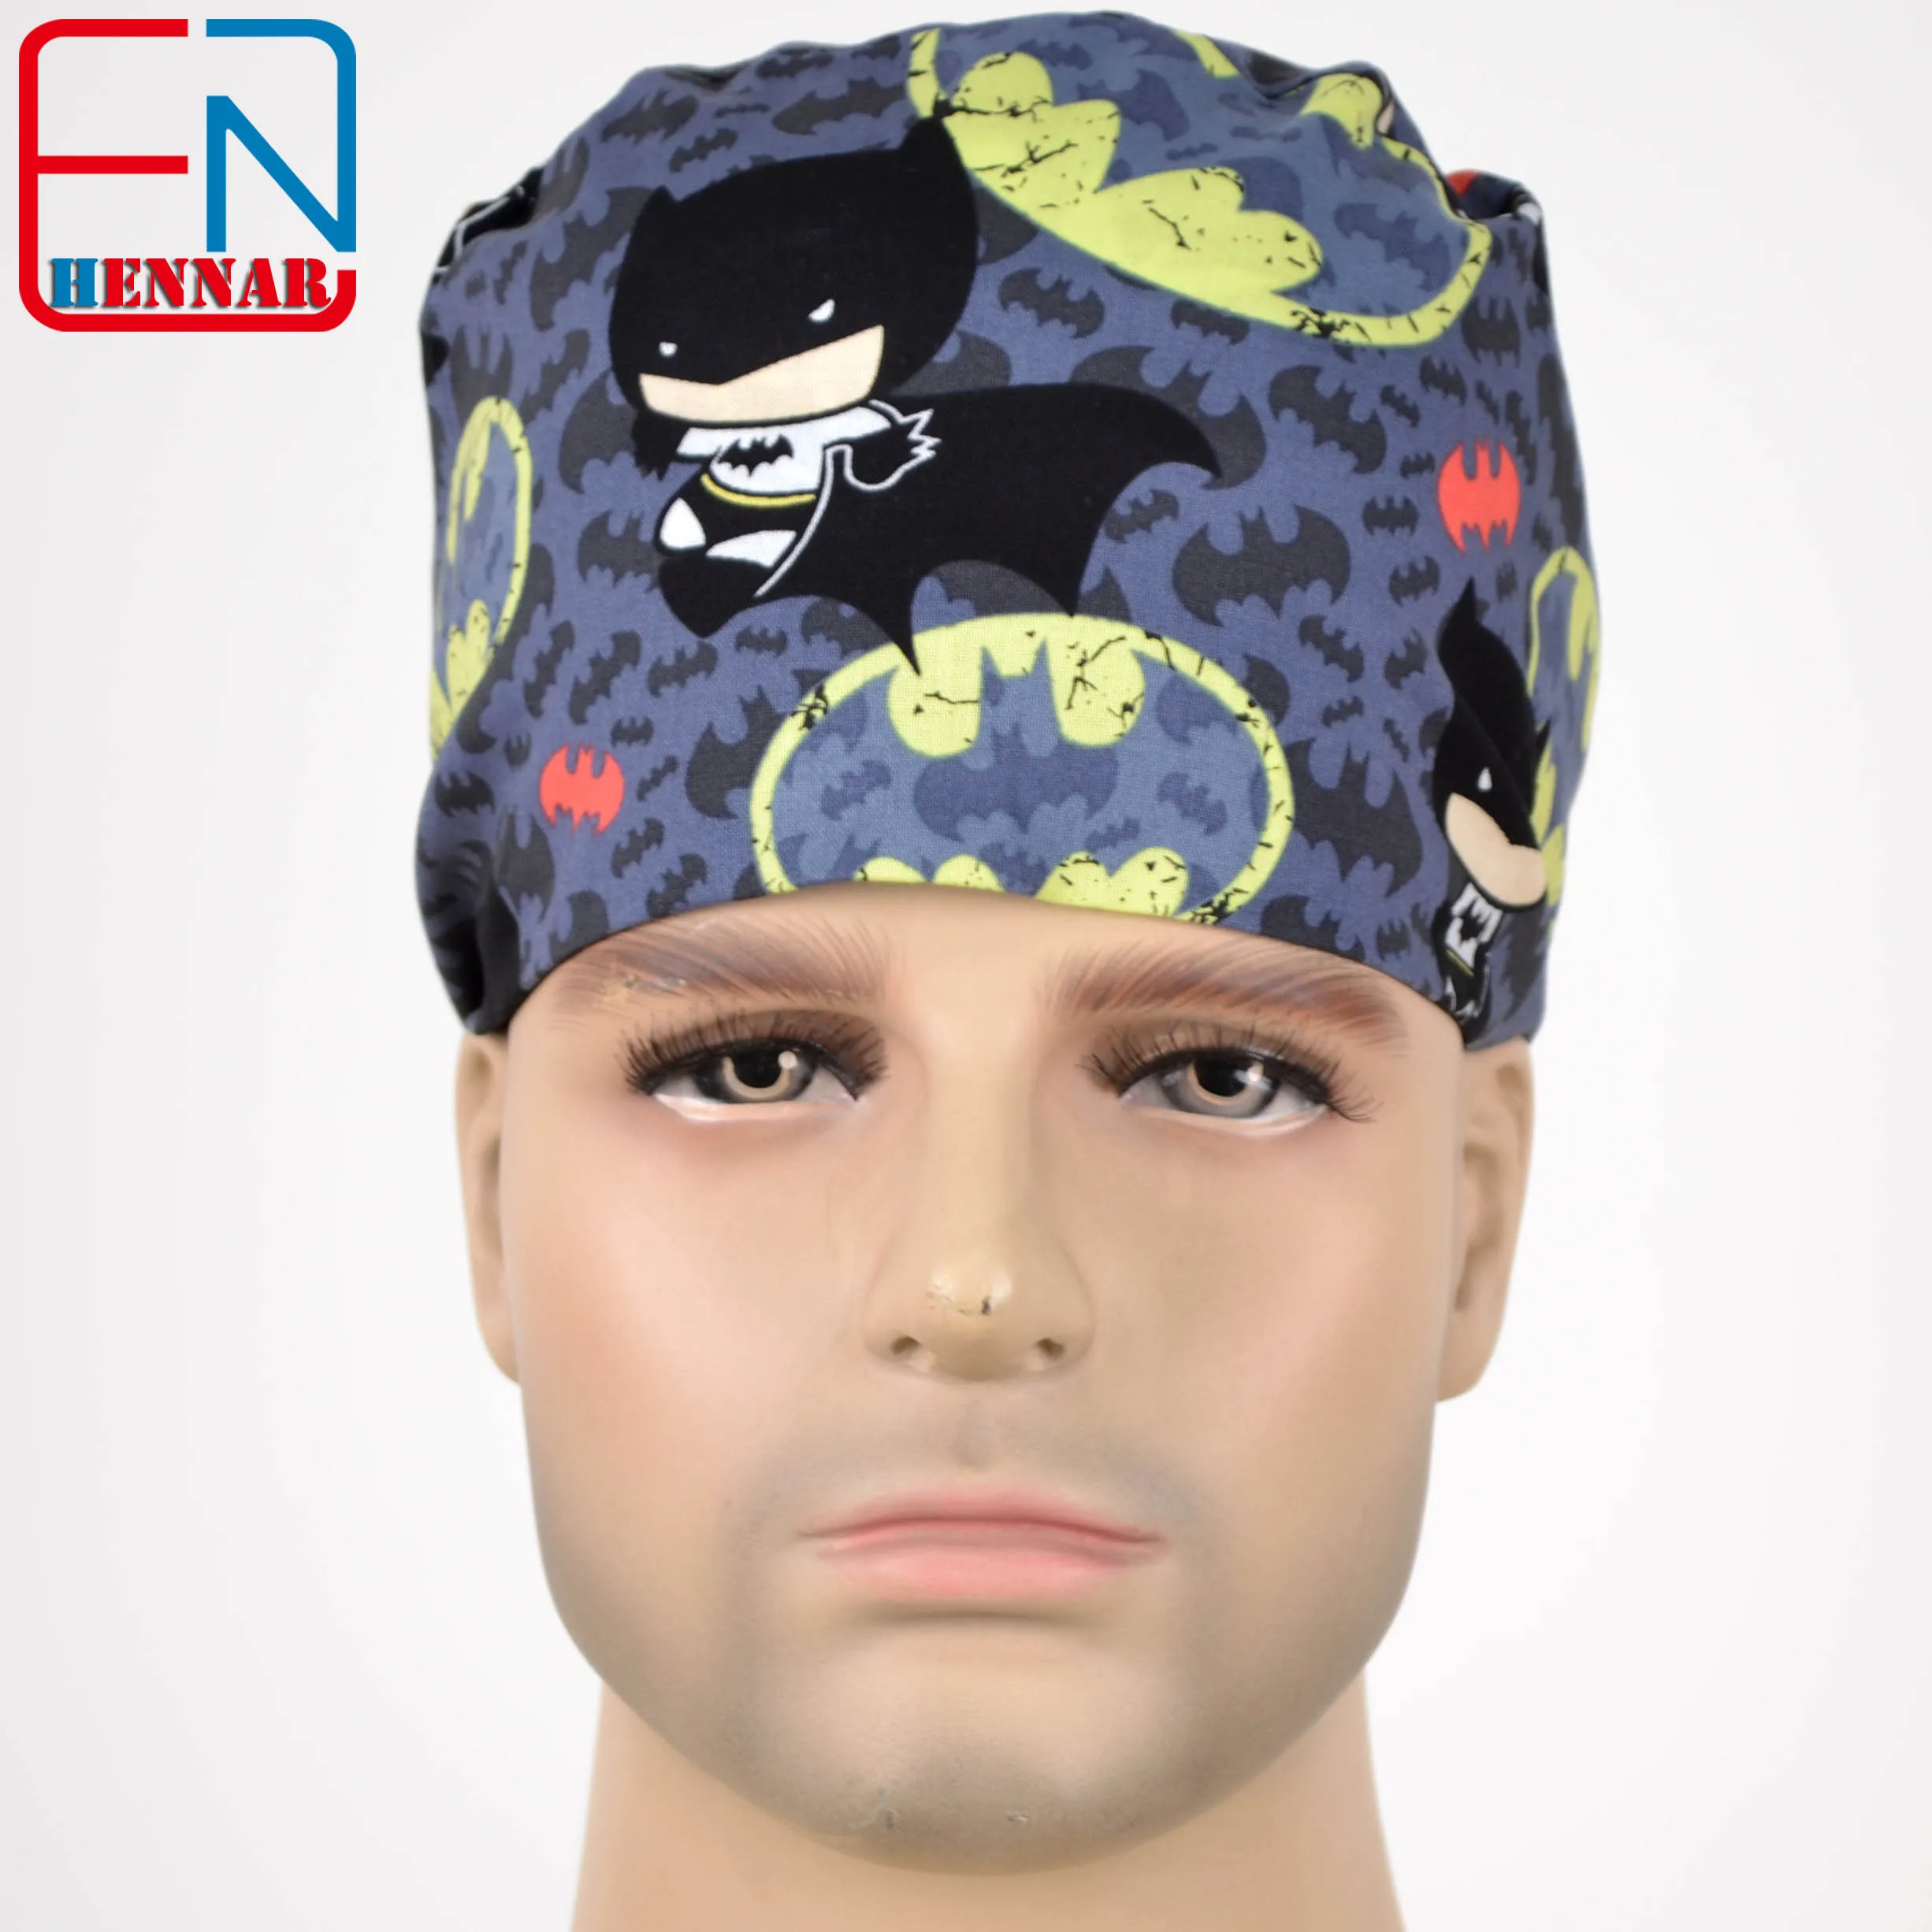 Hennar, Мужская кепка, s маски, хлопок, регулируемые эластичные ленты, хирургическая Кепка, s, медицинская больница, доктор, головной убор, кепка, маска